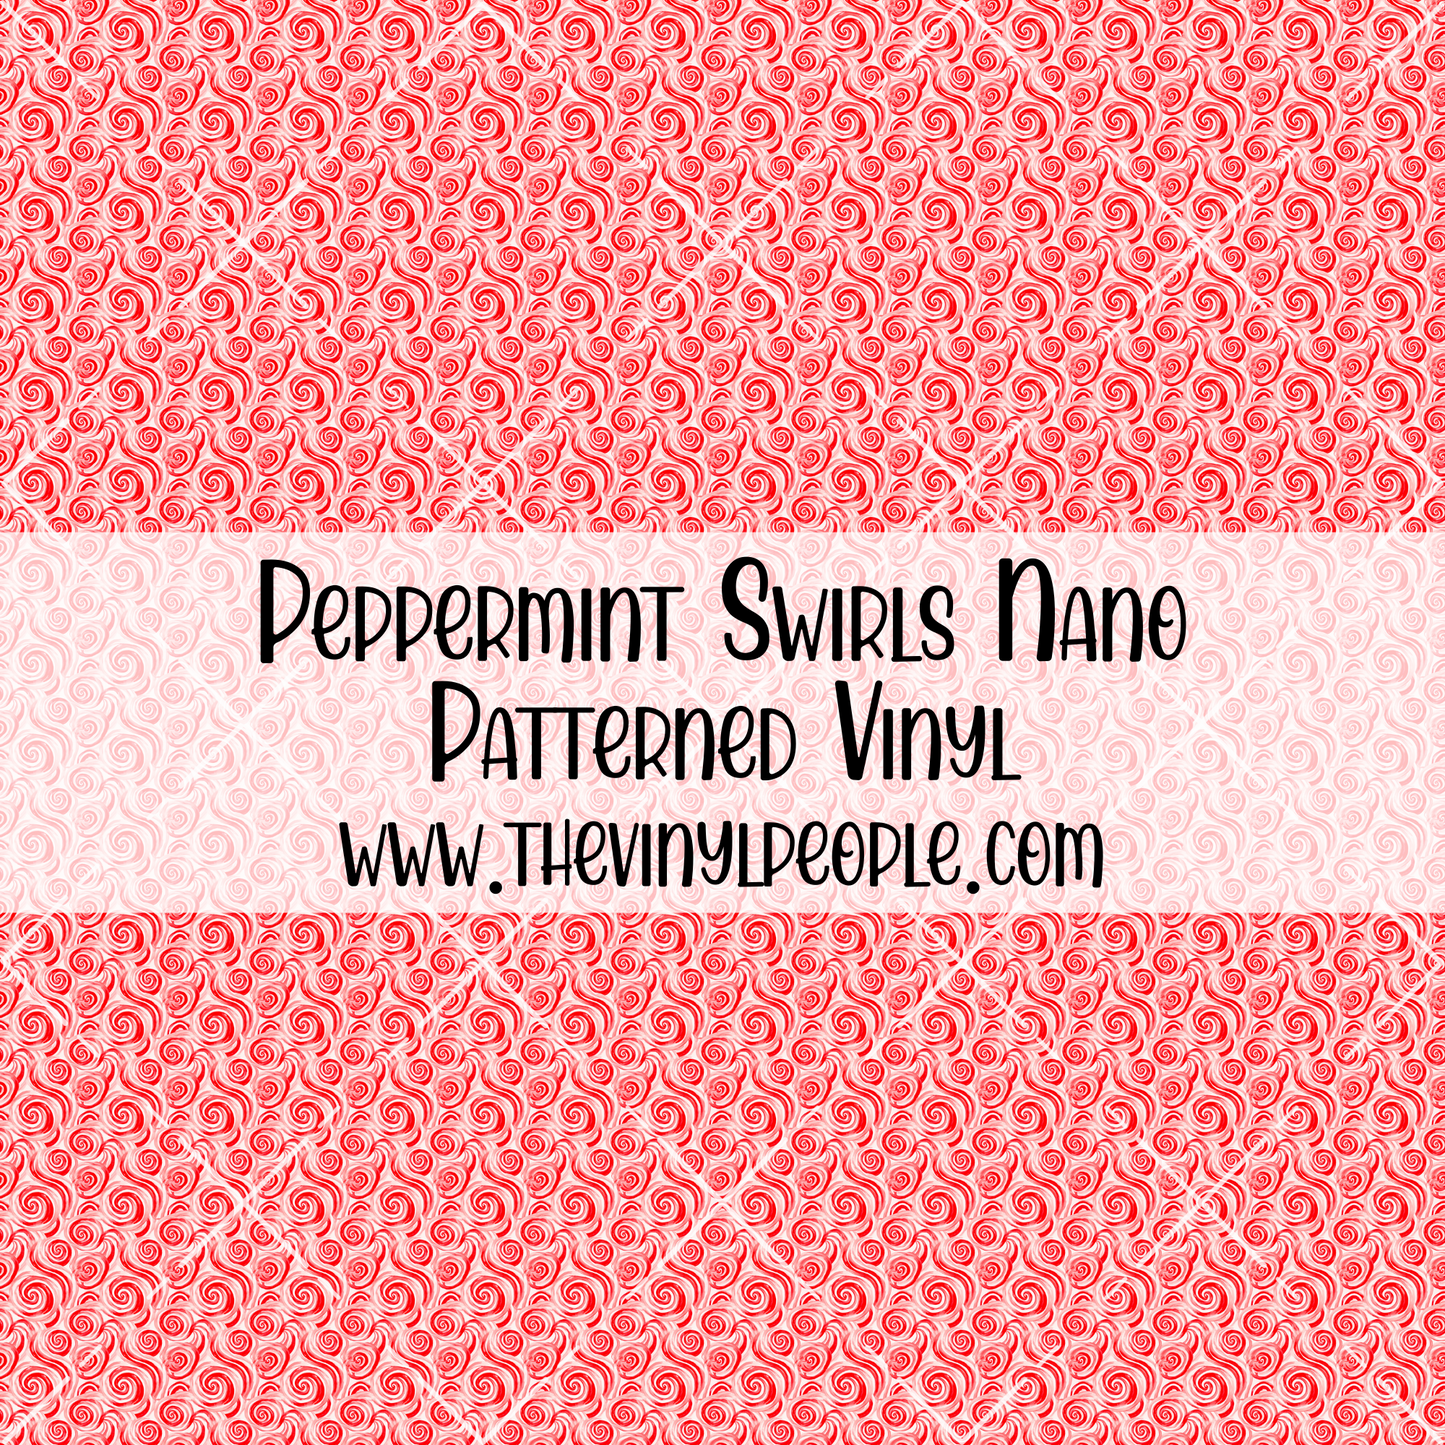 Peppermint Swirls Patterned Vinyl